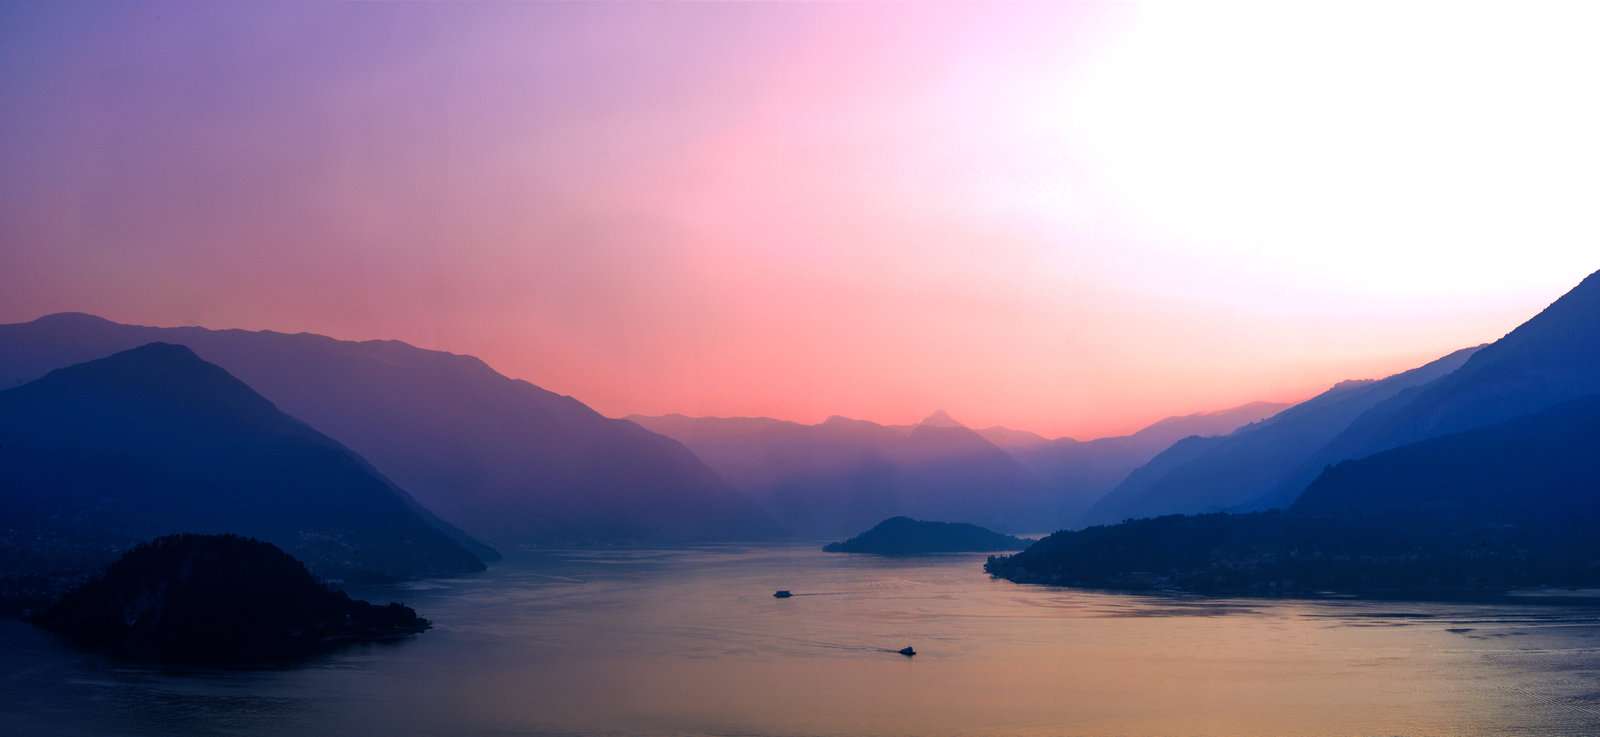 Λίμνη Κόμο: Η υπέροχη λίμνη που θυμίζει πίνακα ζωγραφικής